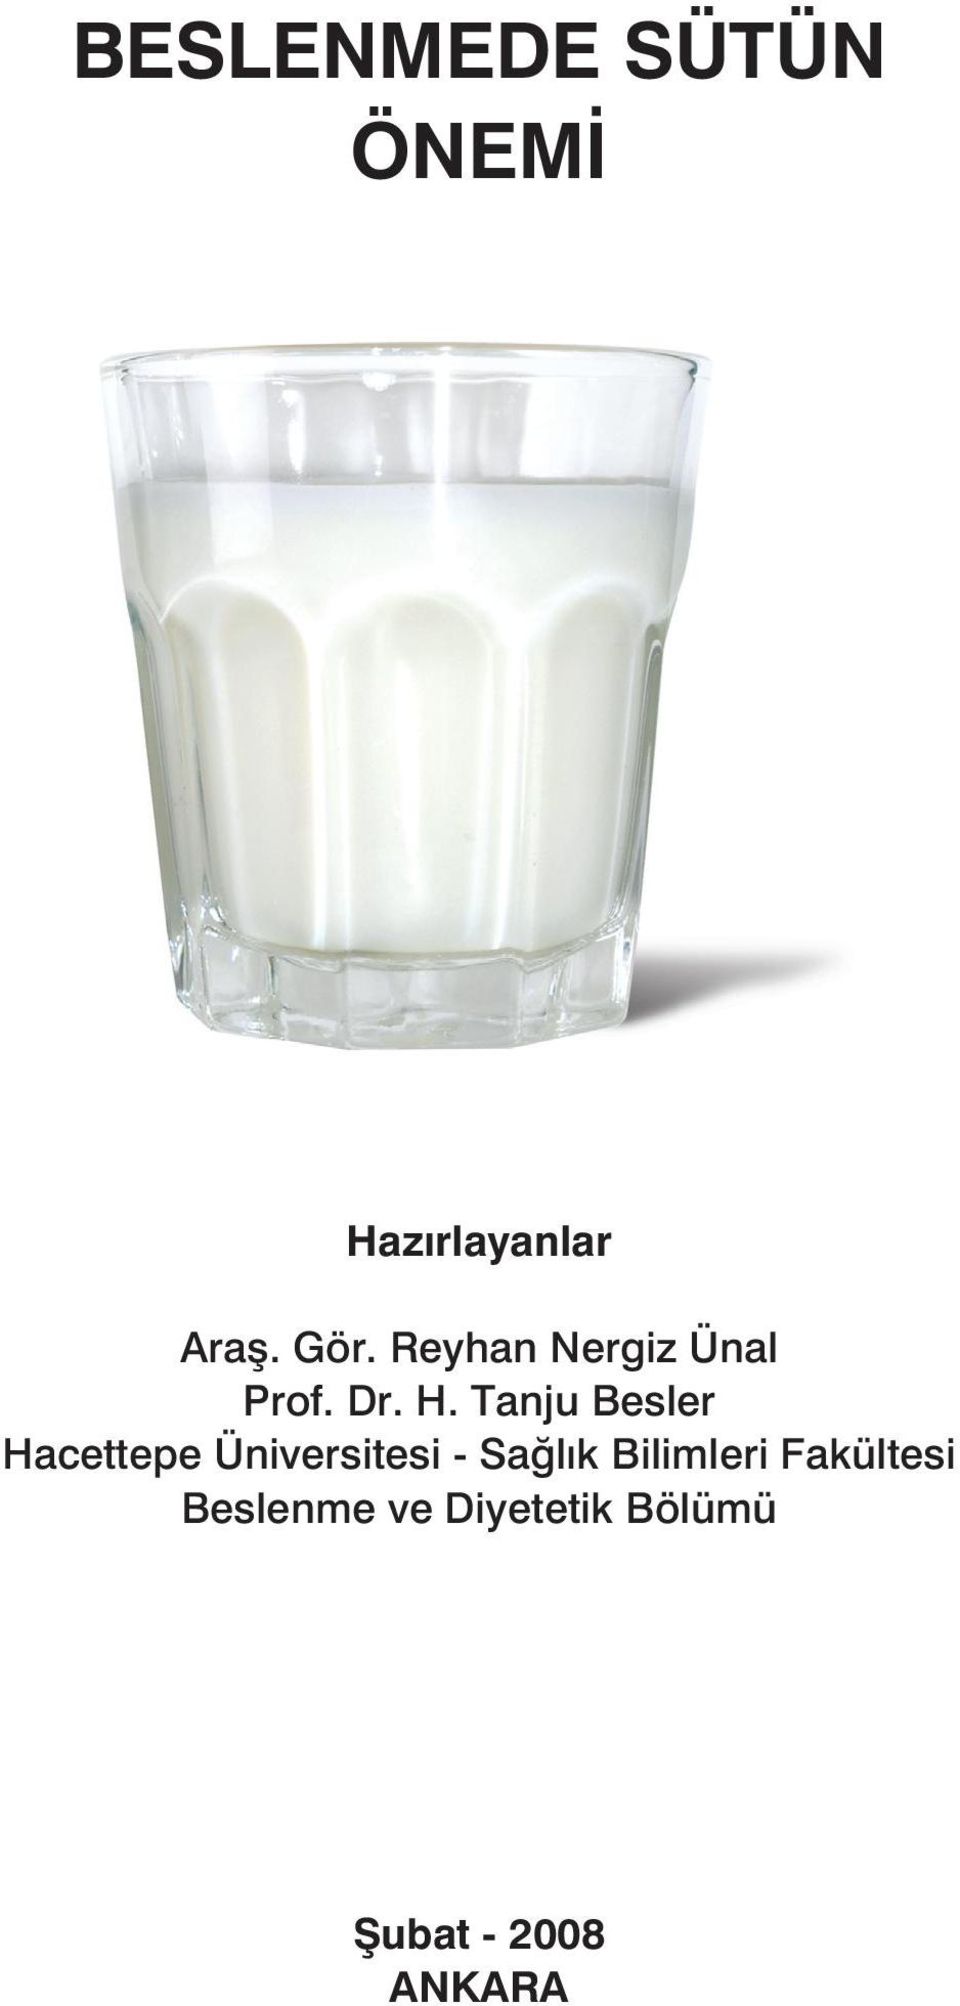 Tanju Besler Hacettepe Üniversitesi - Sağlık